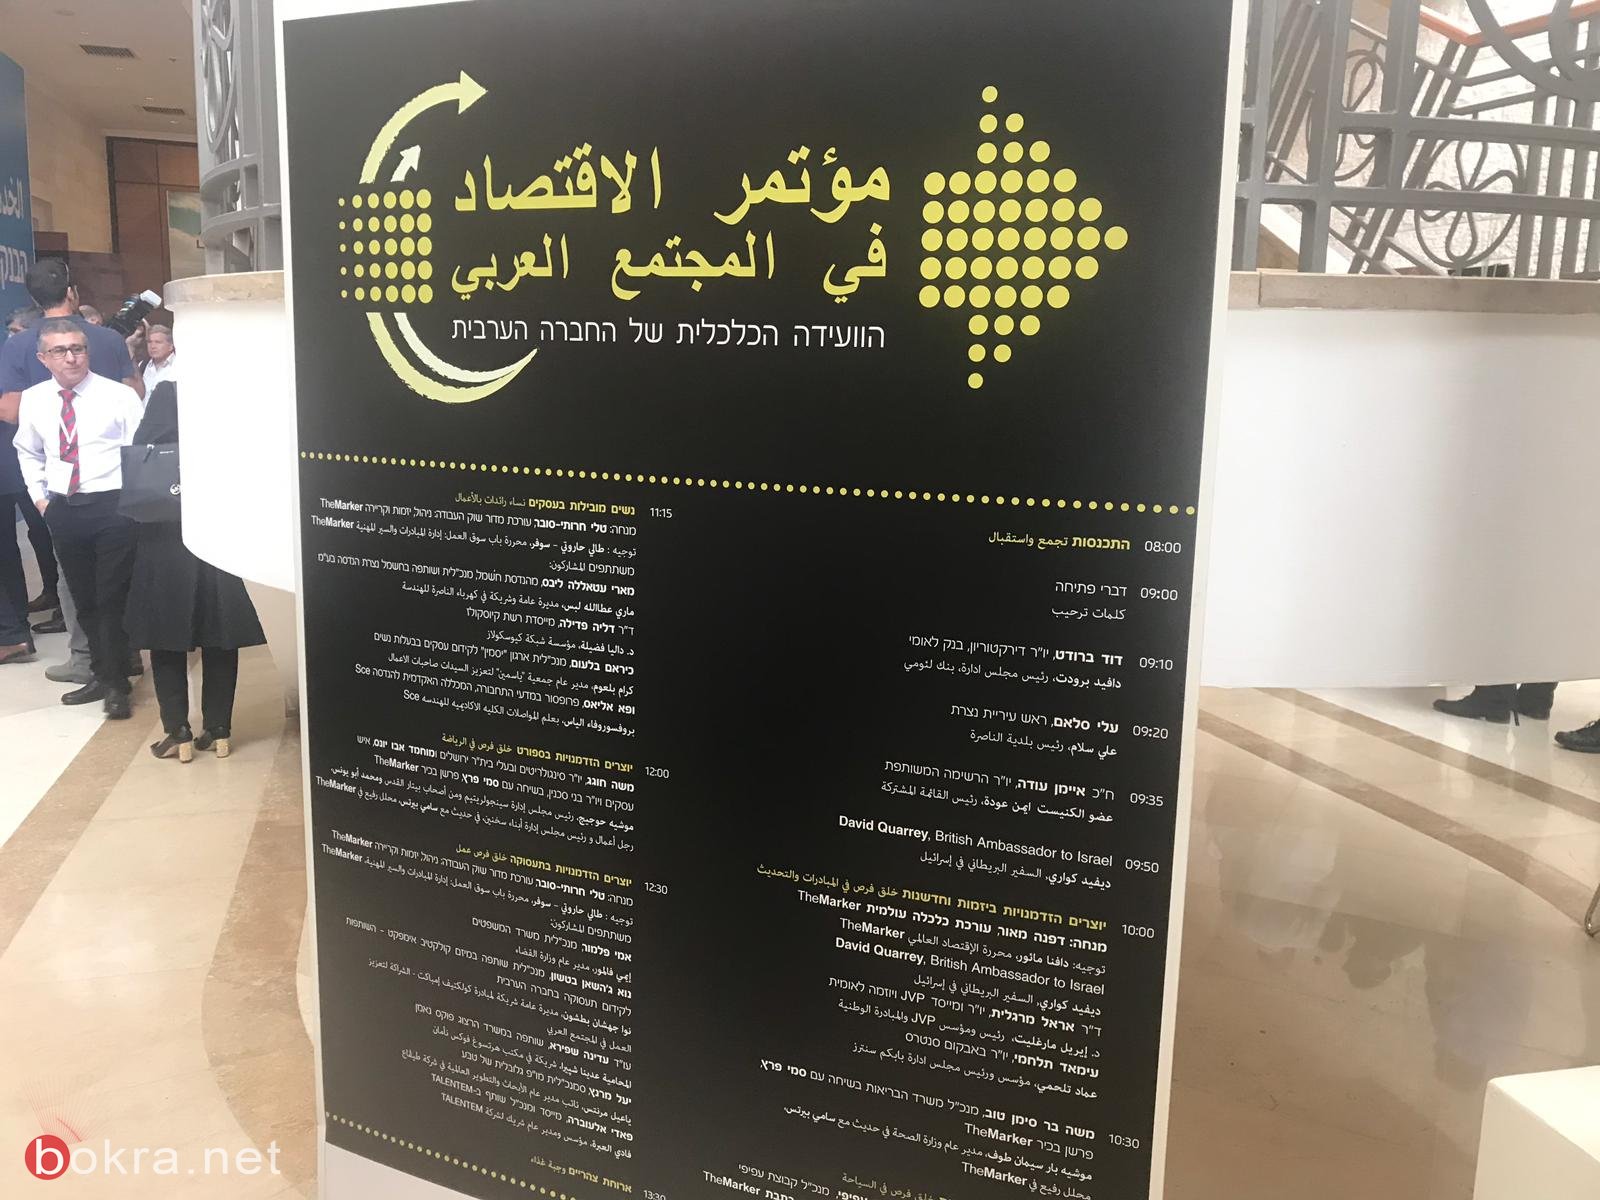  انطلاق أعمال "مؤتمر الاقتصاد في المجتمع العربي" لـ TheMarker وبنك لئومي في الناصرة -29